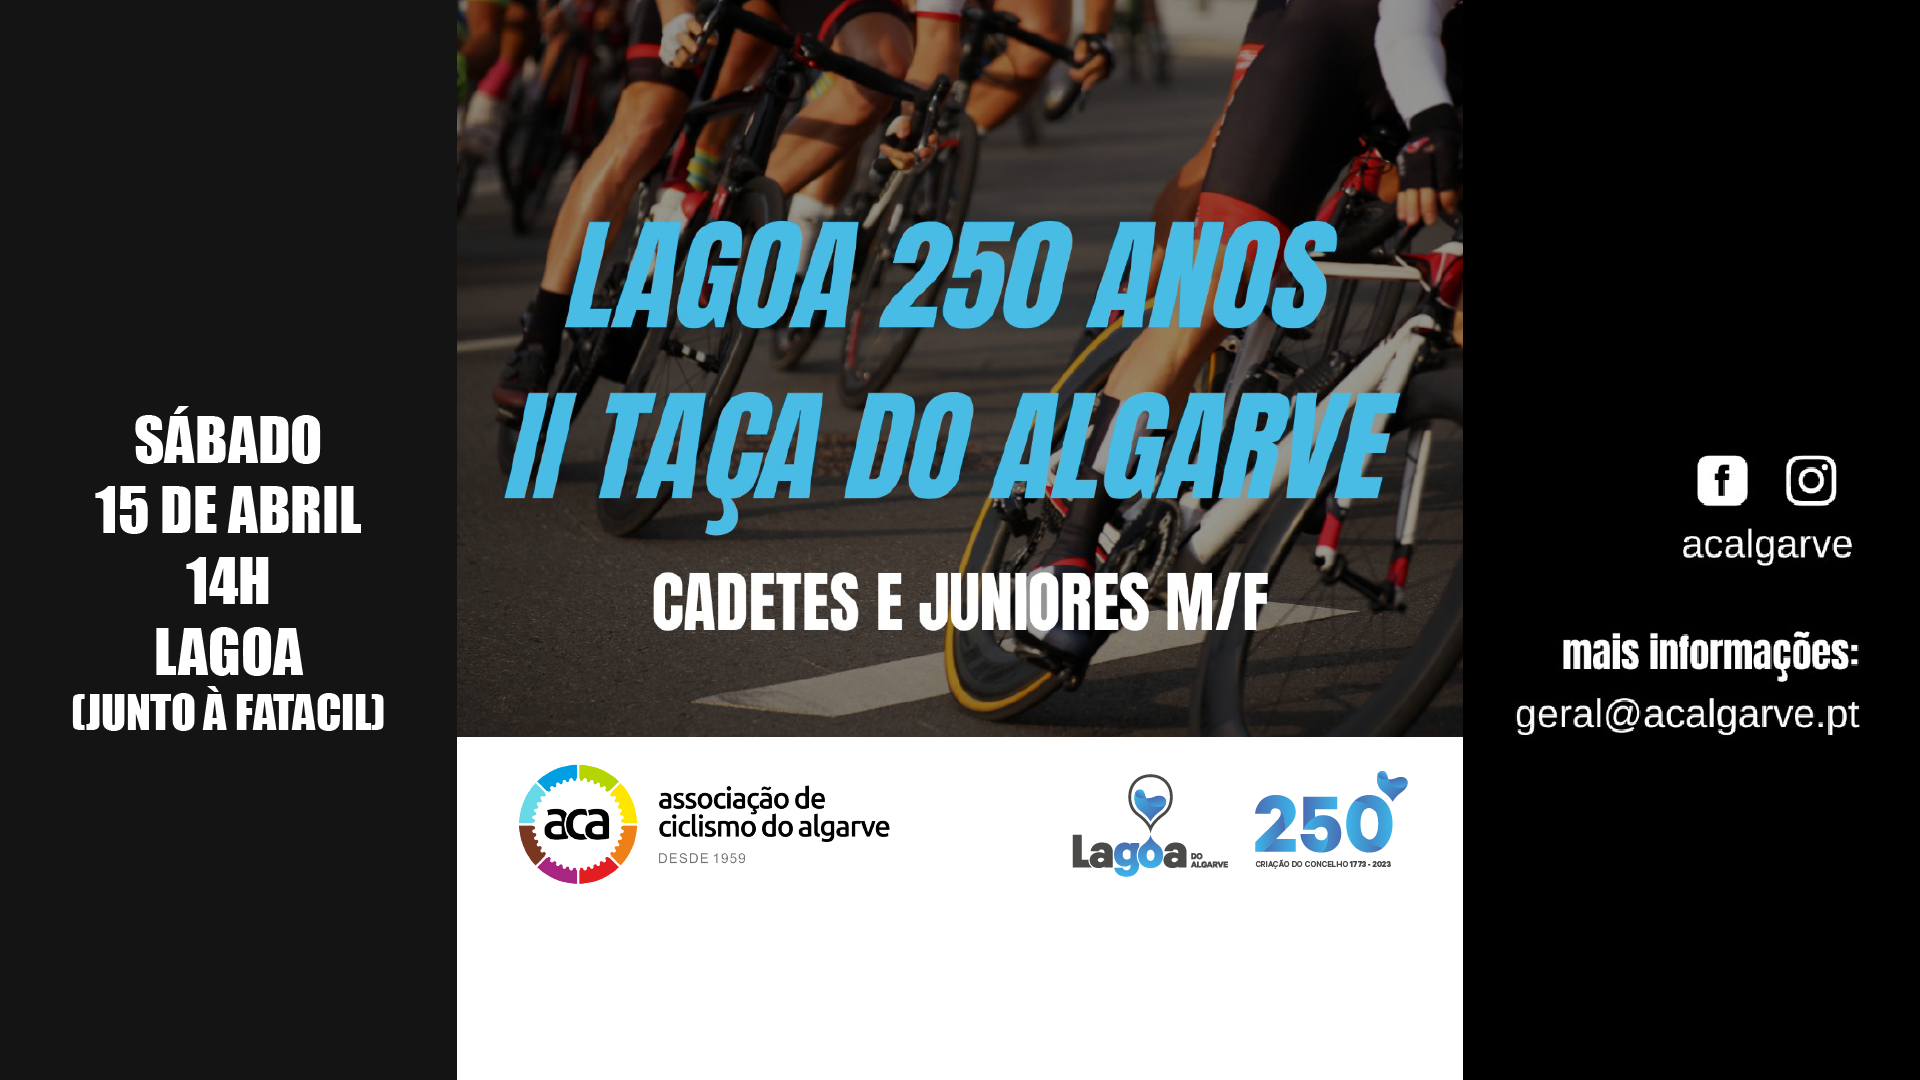 Lagoa 250 Anos - II Taça do Algarve Cadetes e Juniores M/F